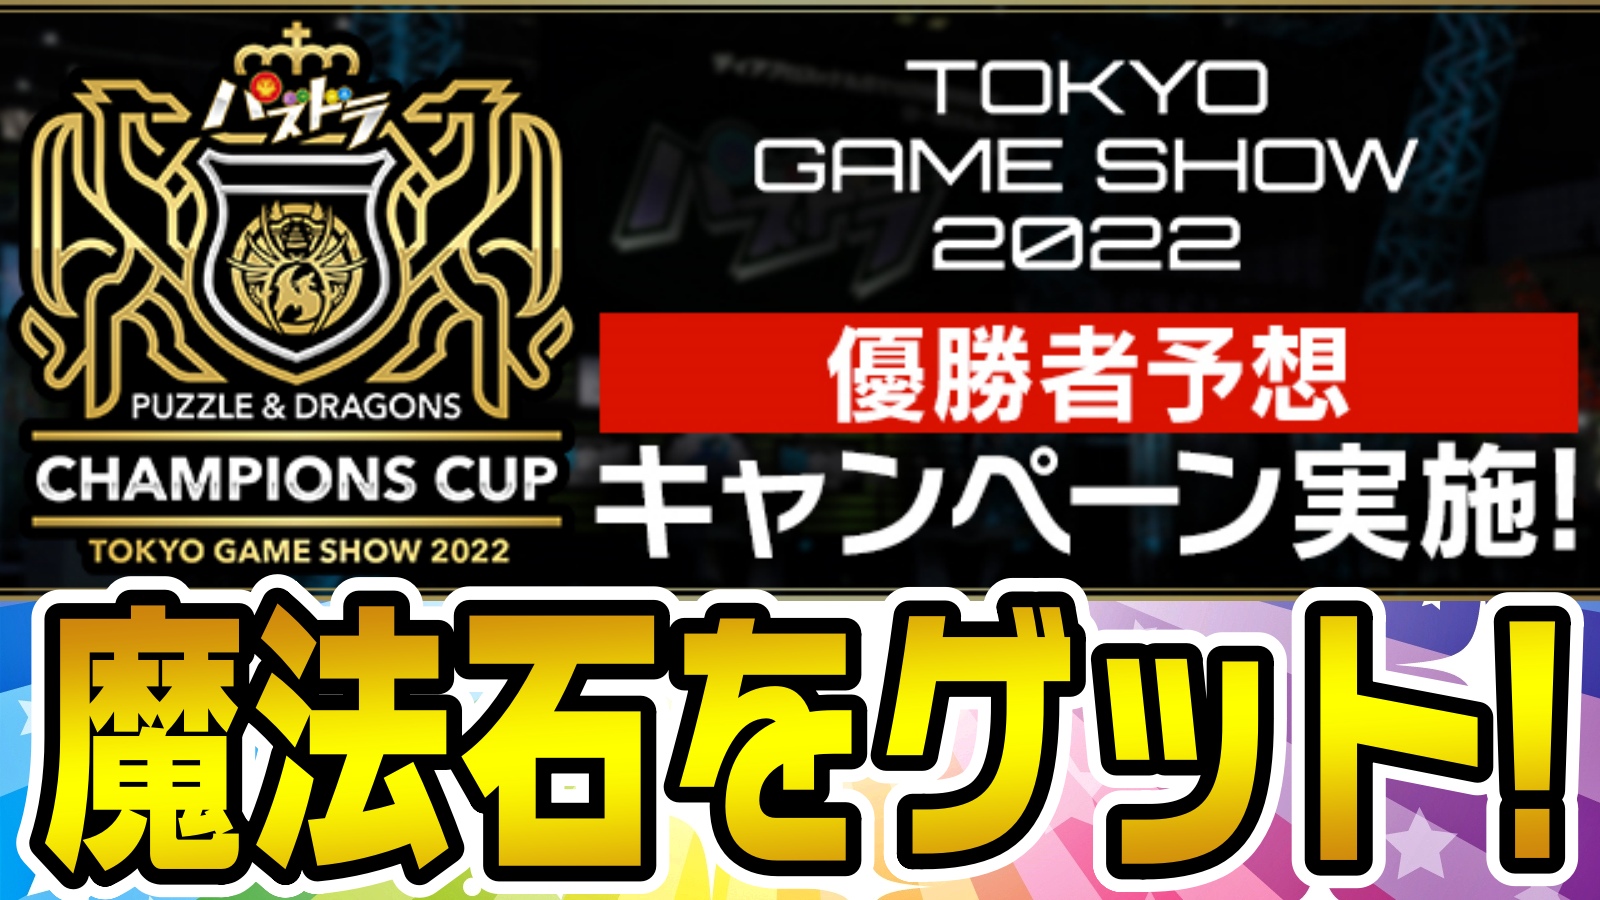 【パズドラ】『魔法石』を参加するだけでゲットしよう!! 「パズドラチャンピオンズカップ TOKYO GAME SHOW 2022」優勝者予想キャンペーン実施!